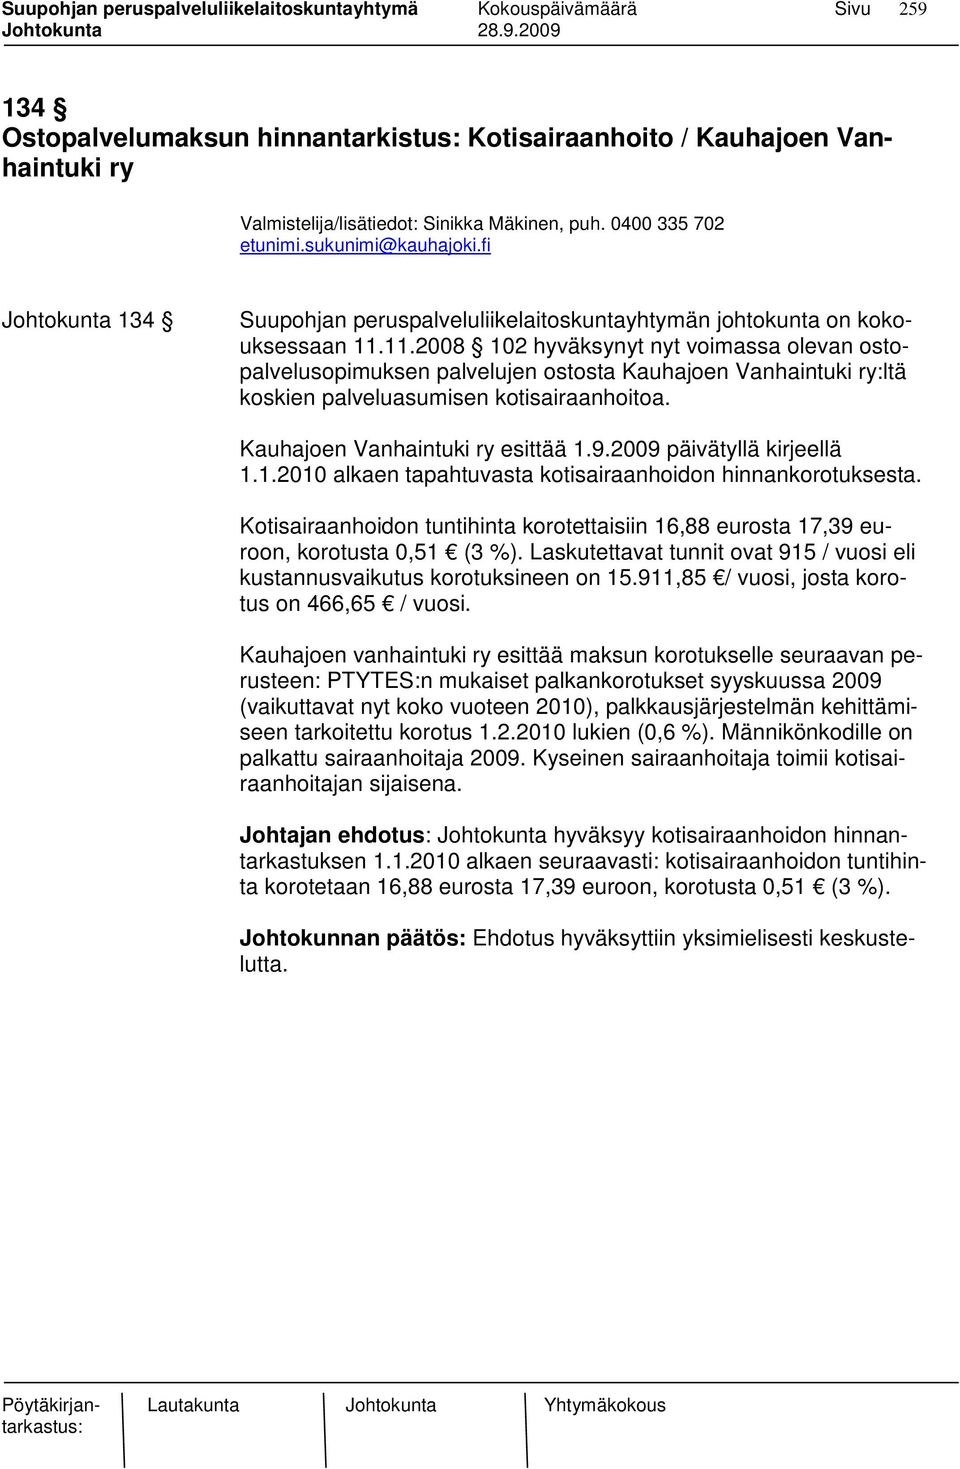 11.2008 102 hyväksynyt nyt voimassa olevan ostopalvelusopimuksen palvelujen ostosta Kauhajoen Vanhaintuki ry:ltä koskien palveluasumisen kotisairaanhoitoa. Kauhajoen Vanhaintuki ry esittää 1.9.